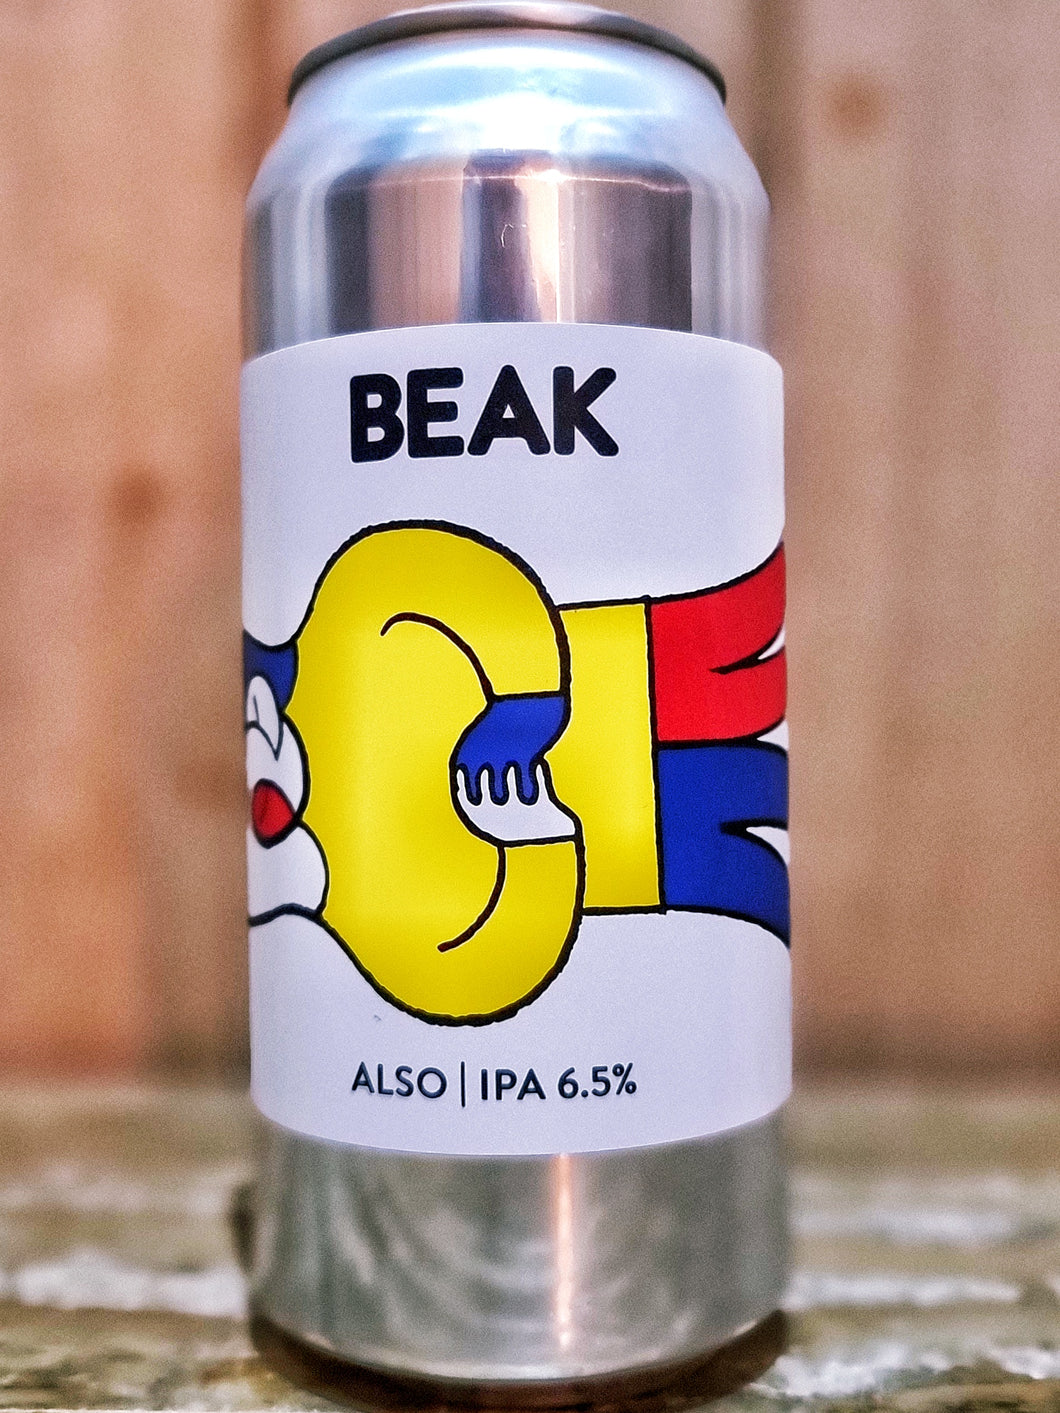 Beak Brewery - Also